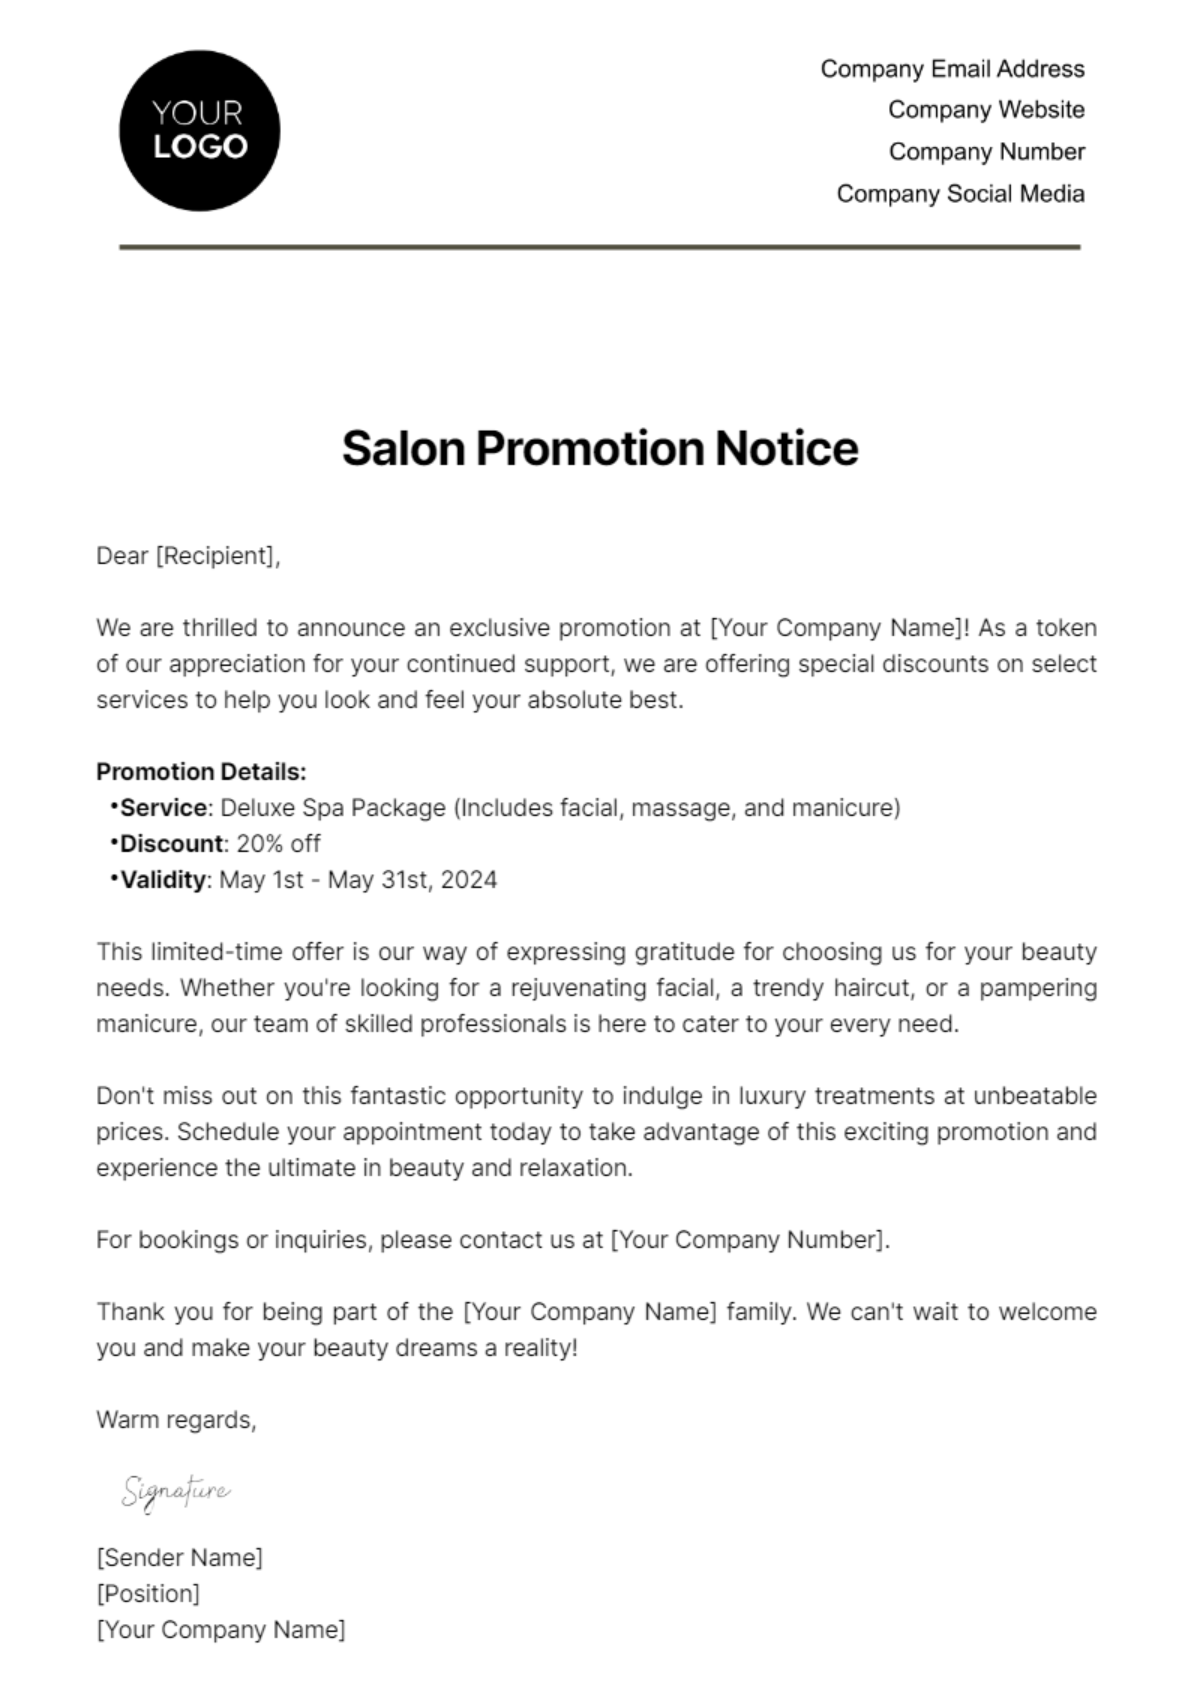 Salon Promotion Notice Template